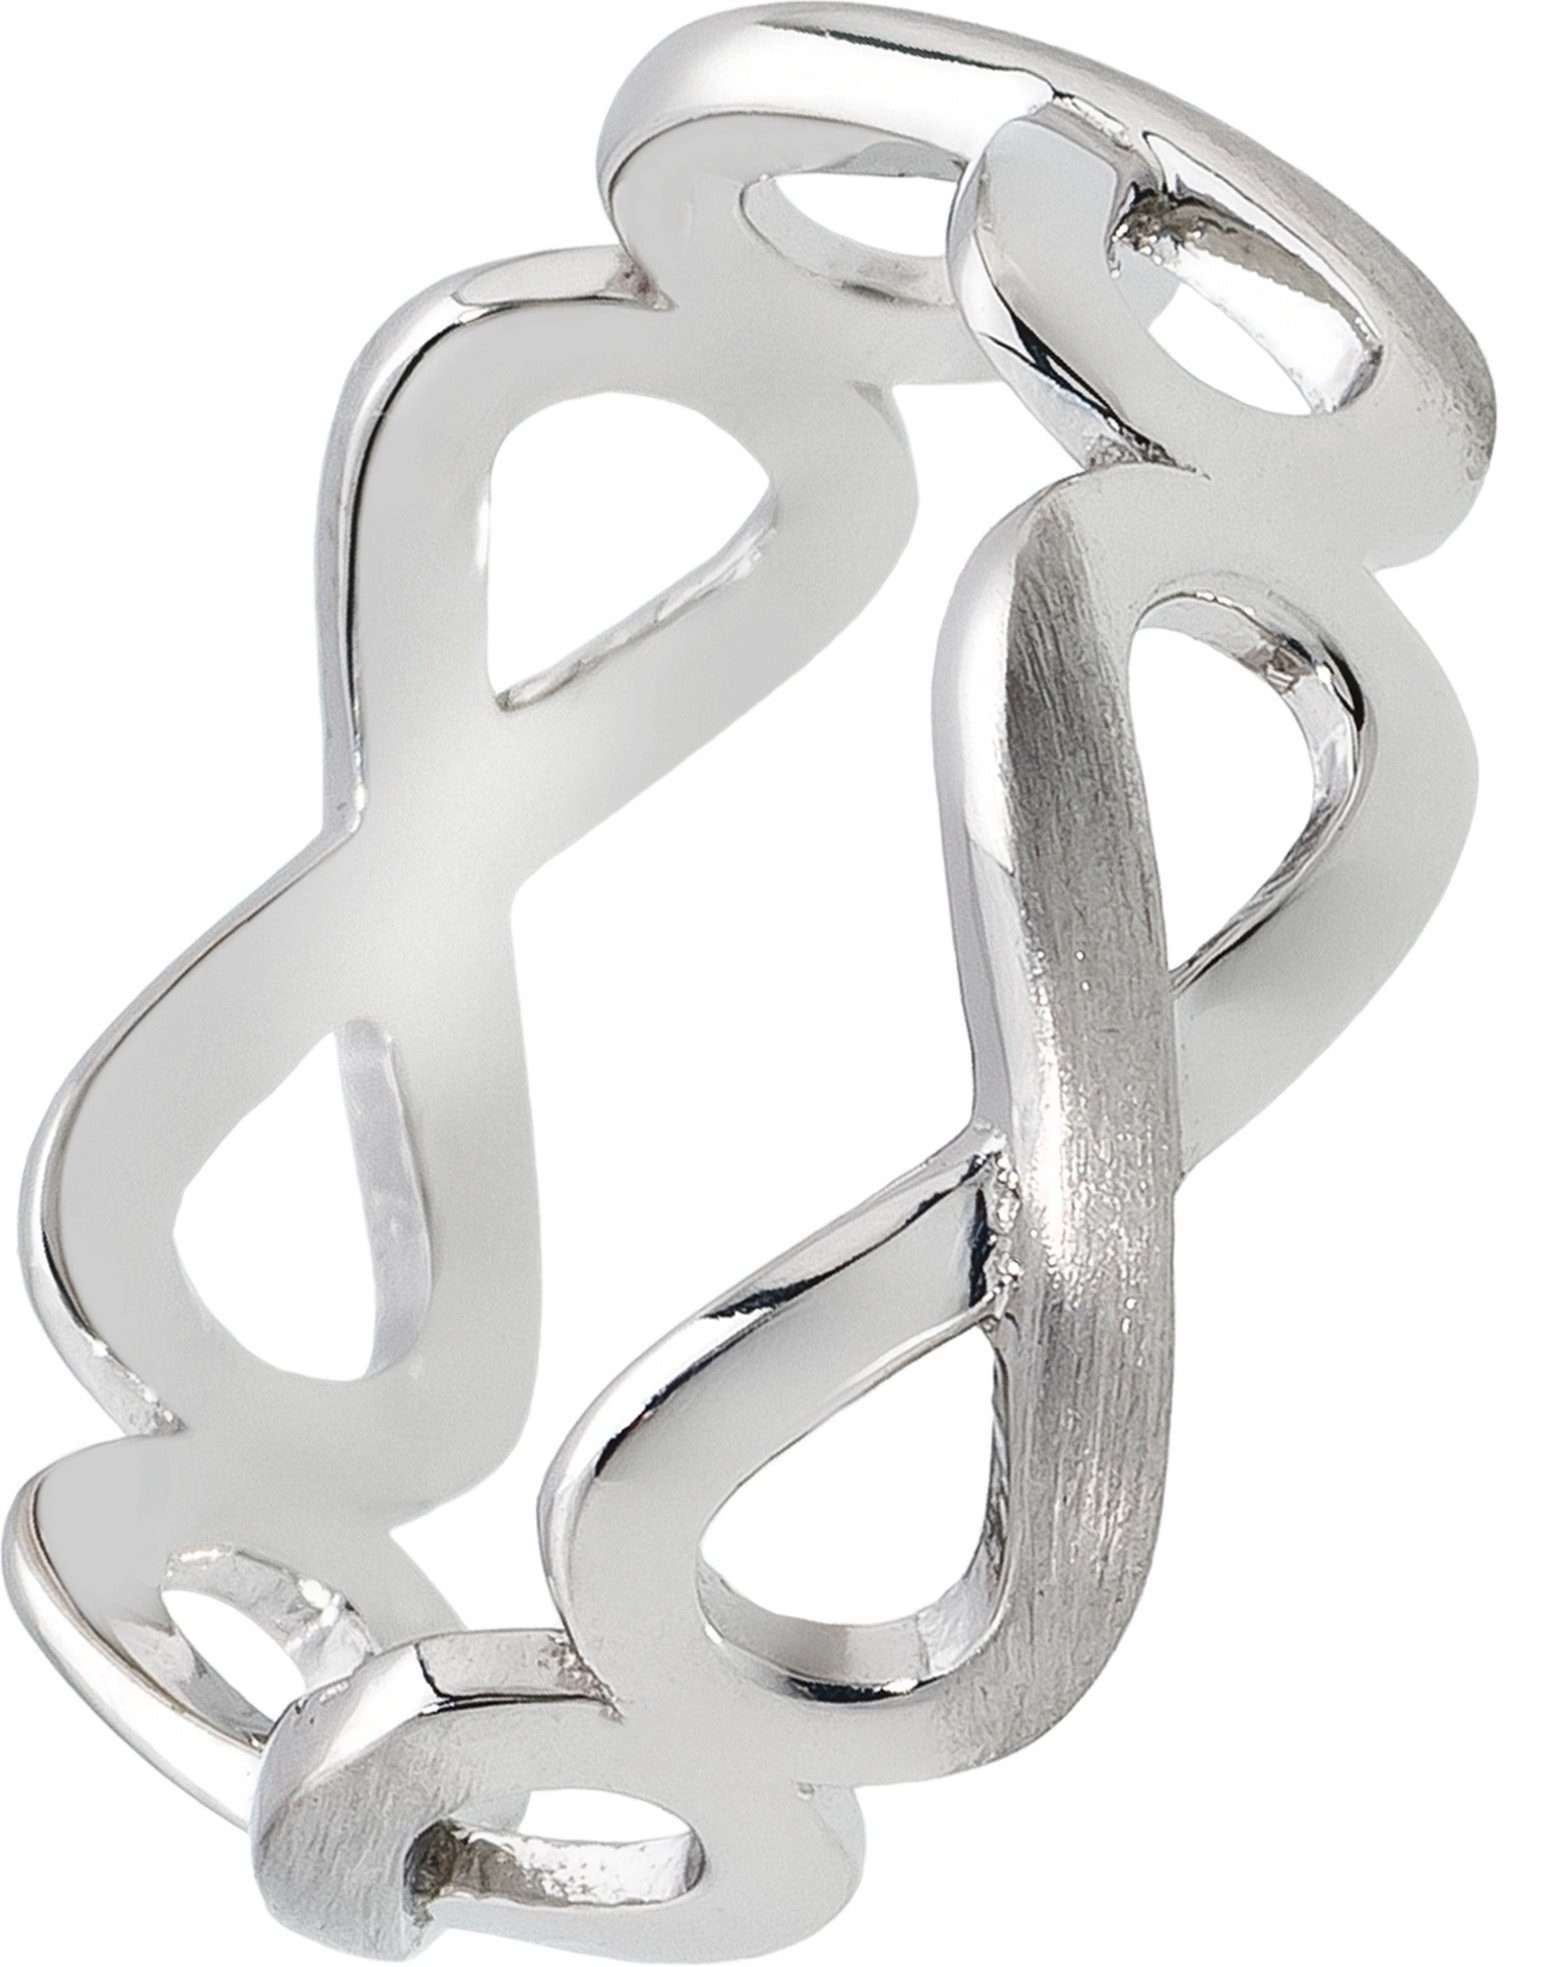 Balia Silberring Balia Ring für Damen Silber 925 (Fingerring), Damen Ring Unendlichkeit, 52 (16,6), 925 Sterling Silber | Silberringe